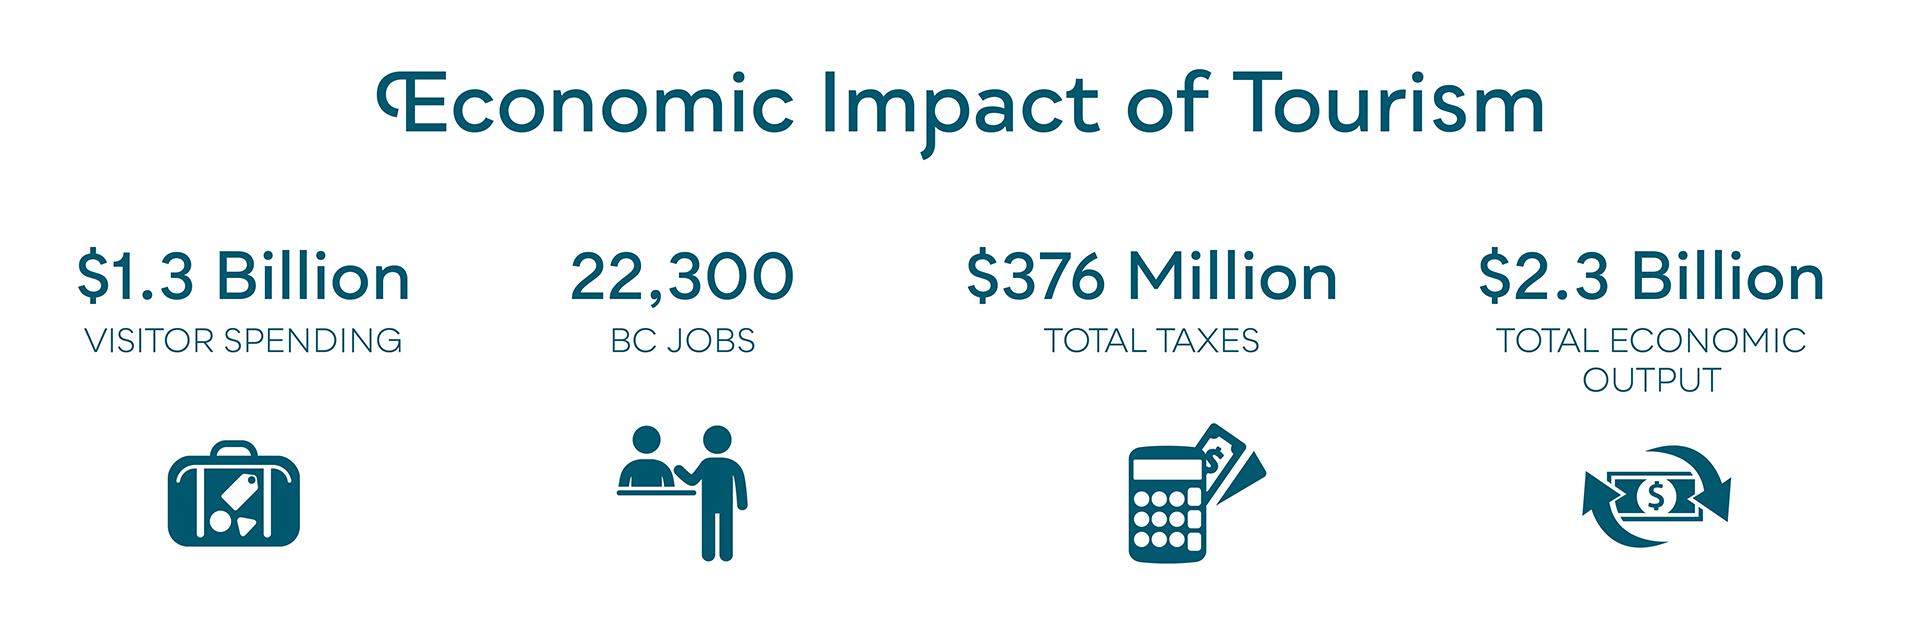 Economic Impact of Tourism: Statistic